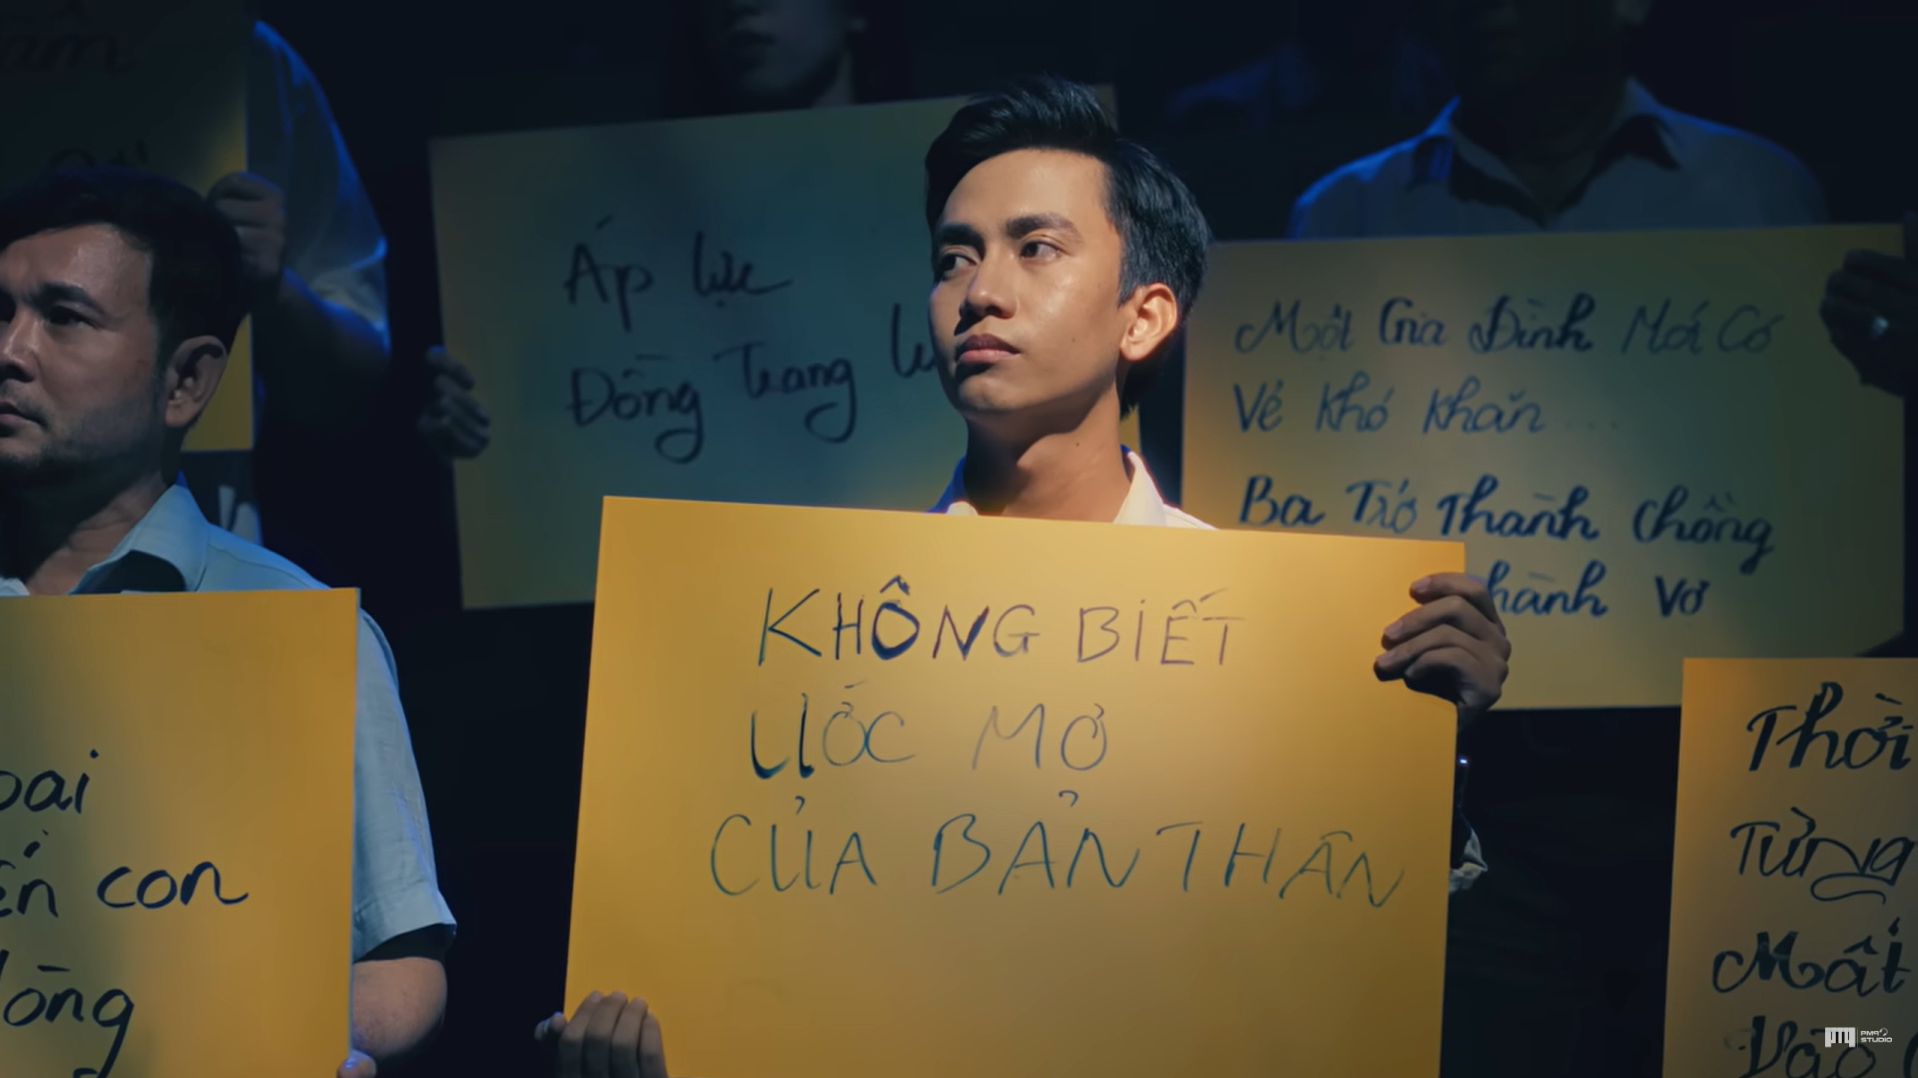 MV Tết của Phan Mạnh Quỳnh và Danisa gây ấn tượng người xem bởi thông điệp tri ân ý nghĩa - ảnh 2